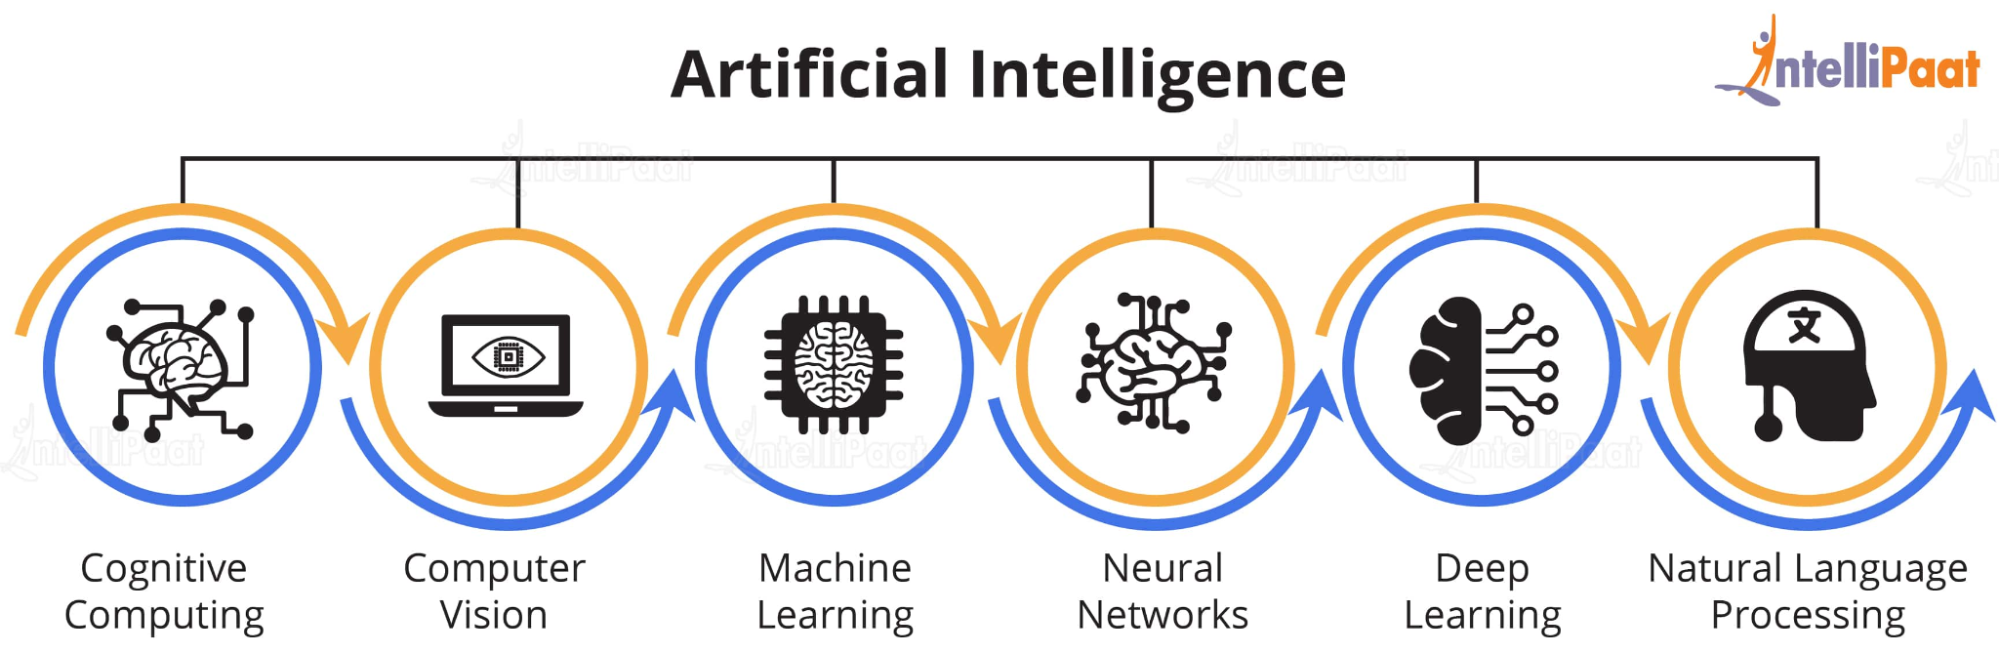 Оцените искусственный интеллект. Машинное обучение. Машинное обучение (Machine Learning). Машинное обучение и искусственный интеллект. How Artificial Intelligence works.